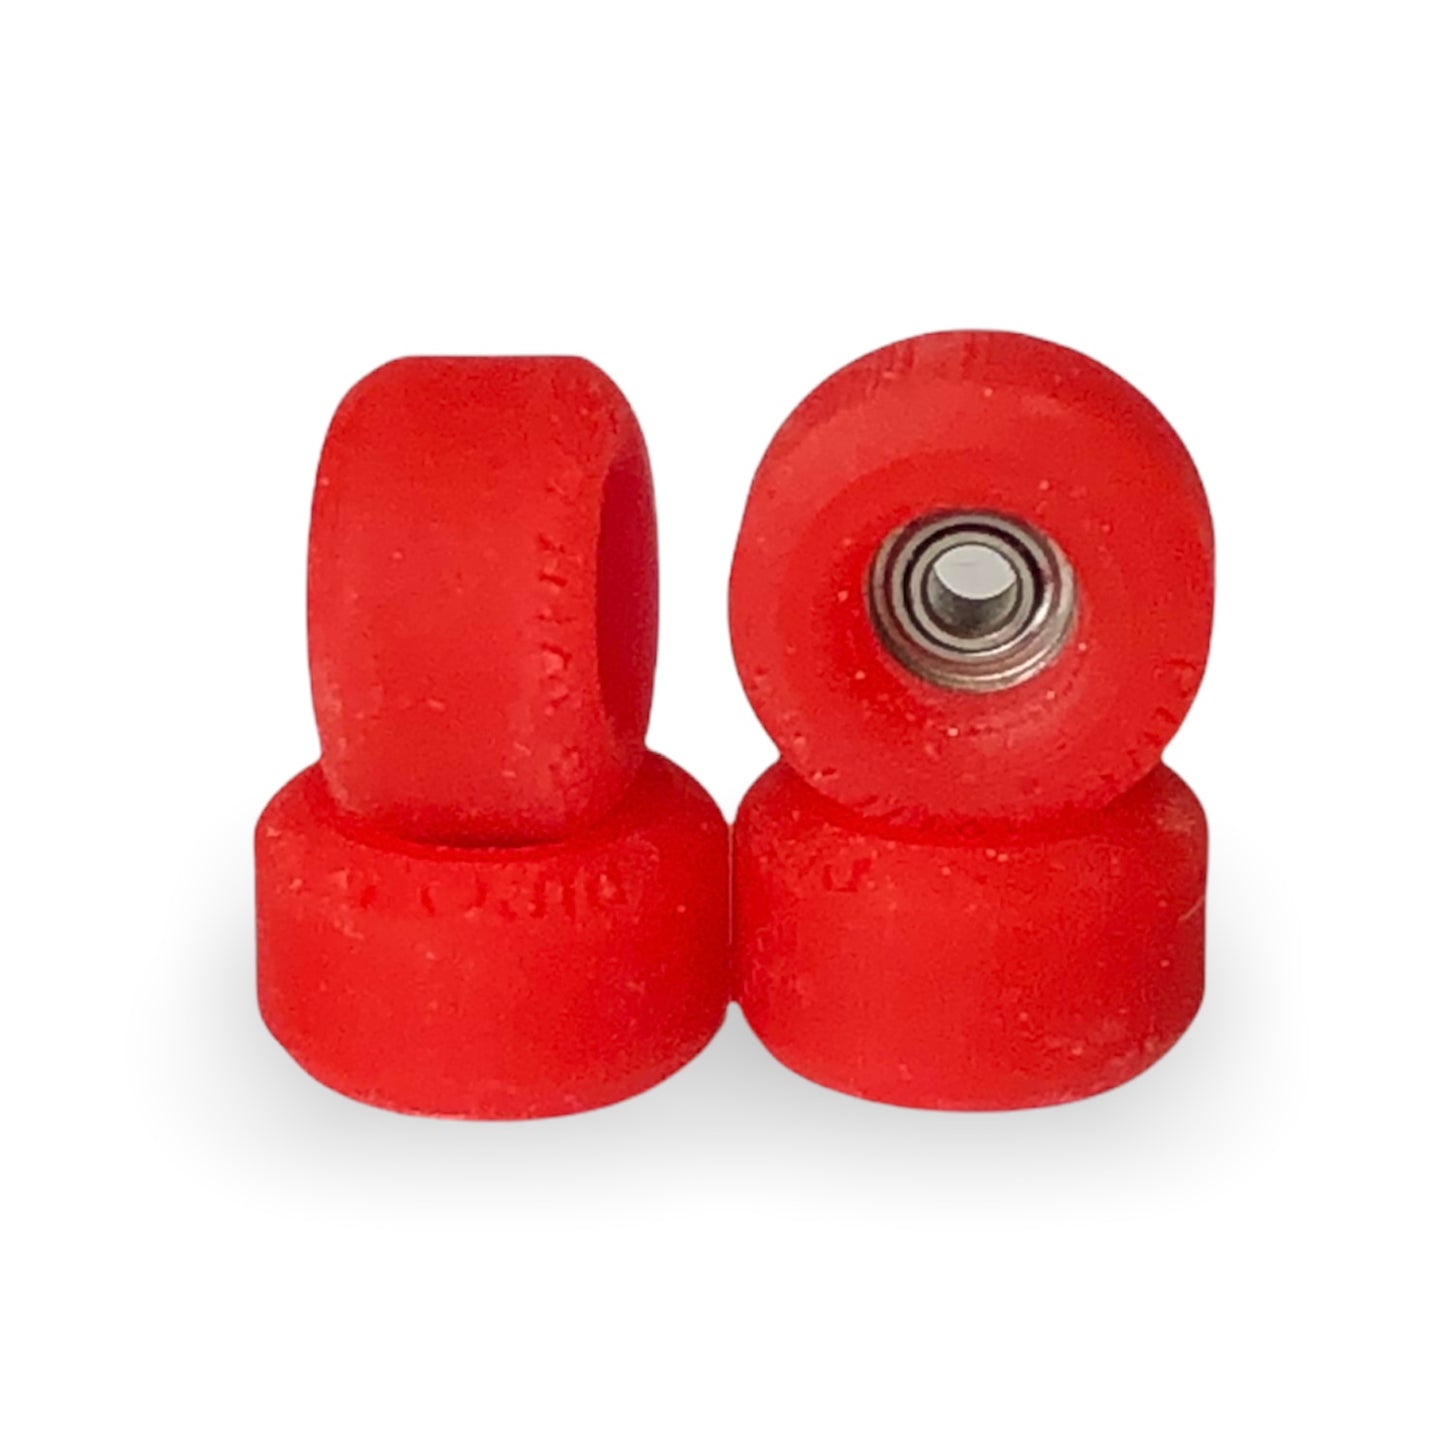 Piro Scarlet Red Fingerboard Wheels